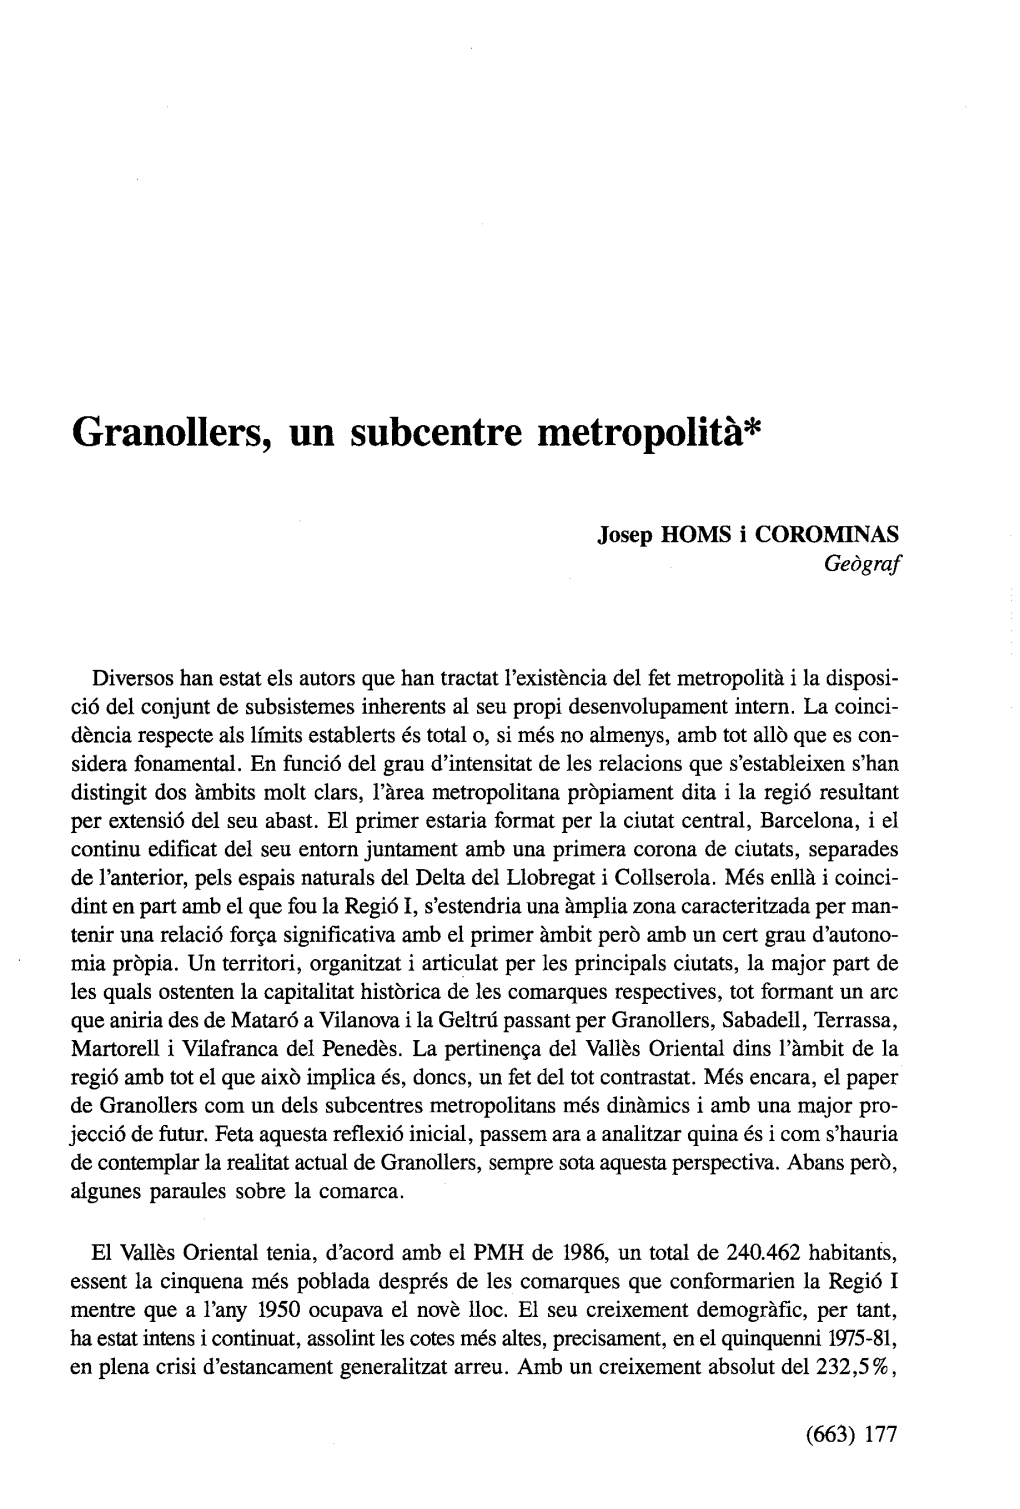 Granollers, Un Subcentre Metropolíta"